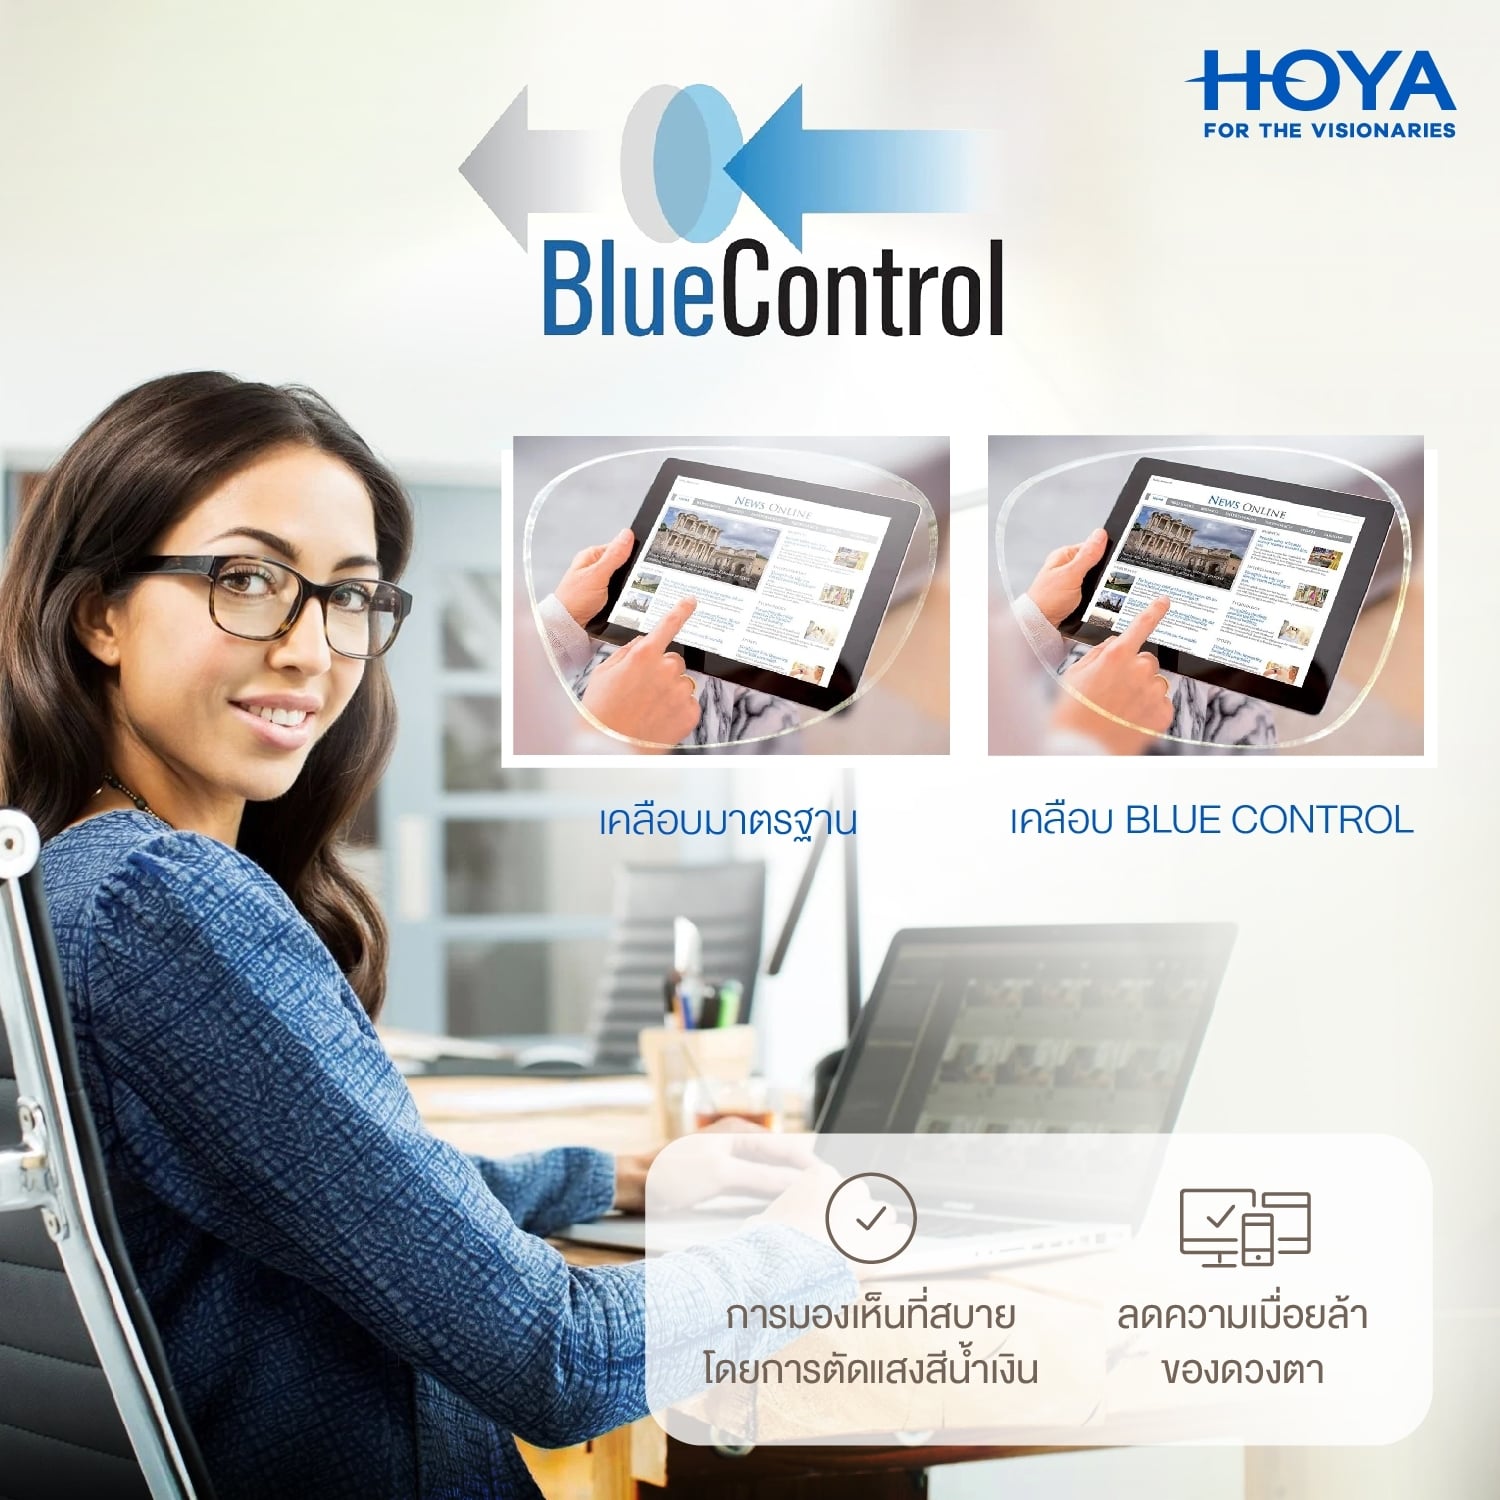 hoya-Blue-control-1